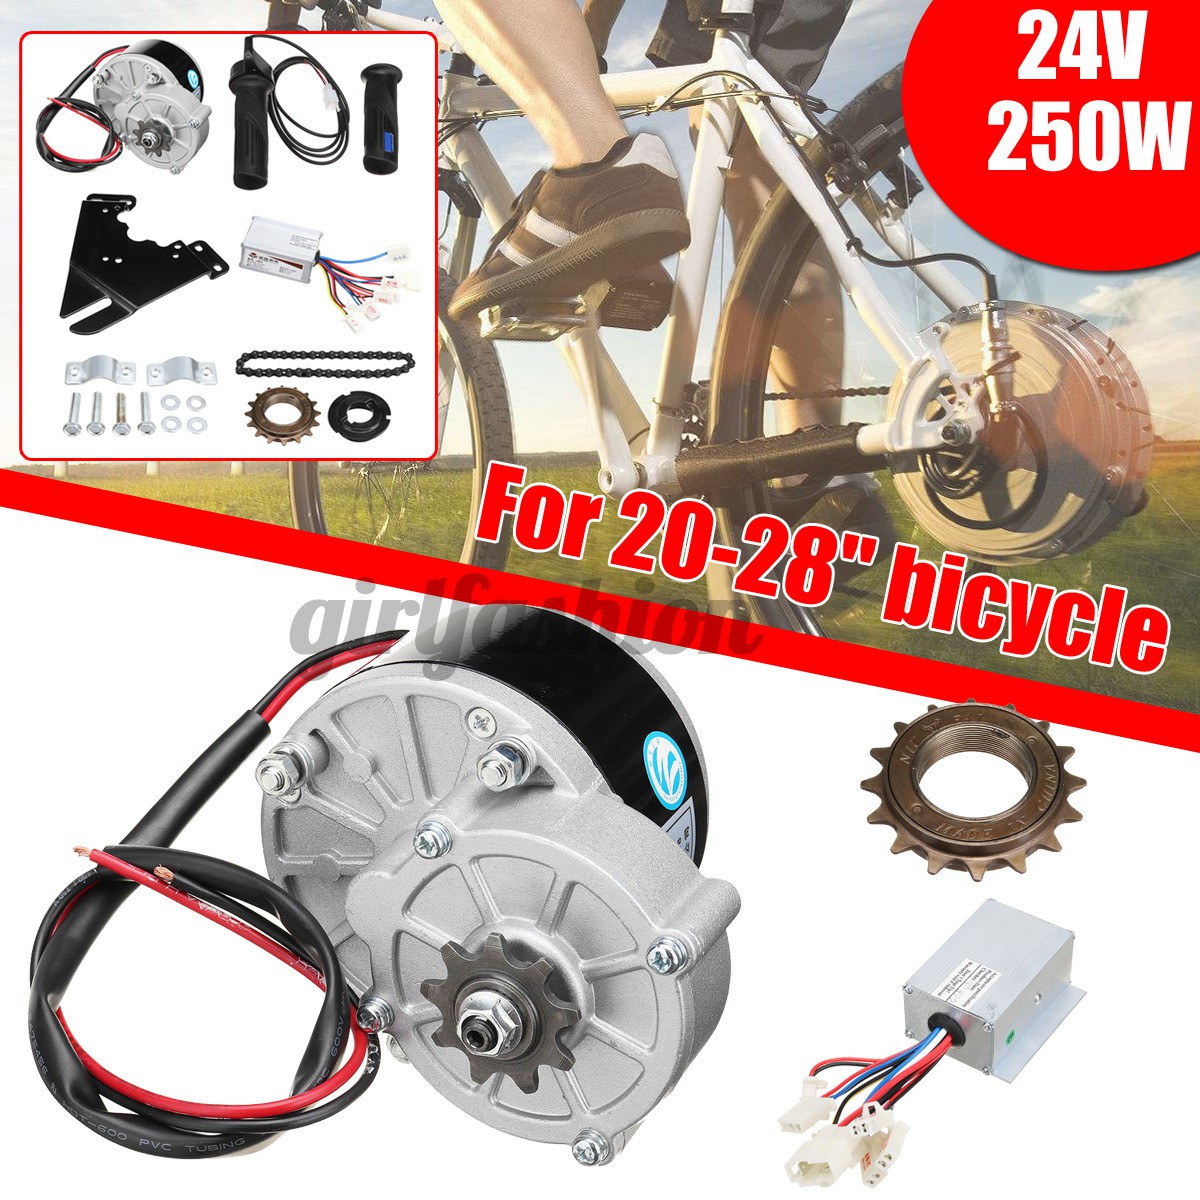 20 electric bike conversion kit